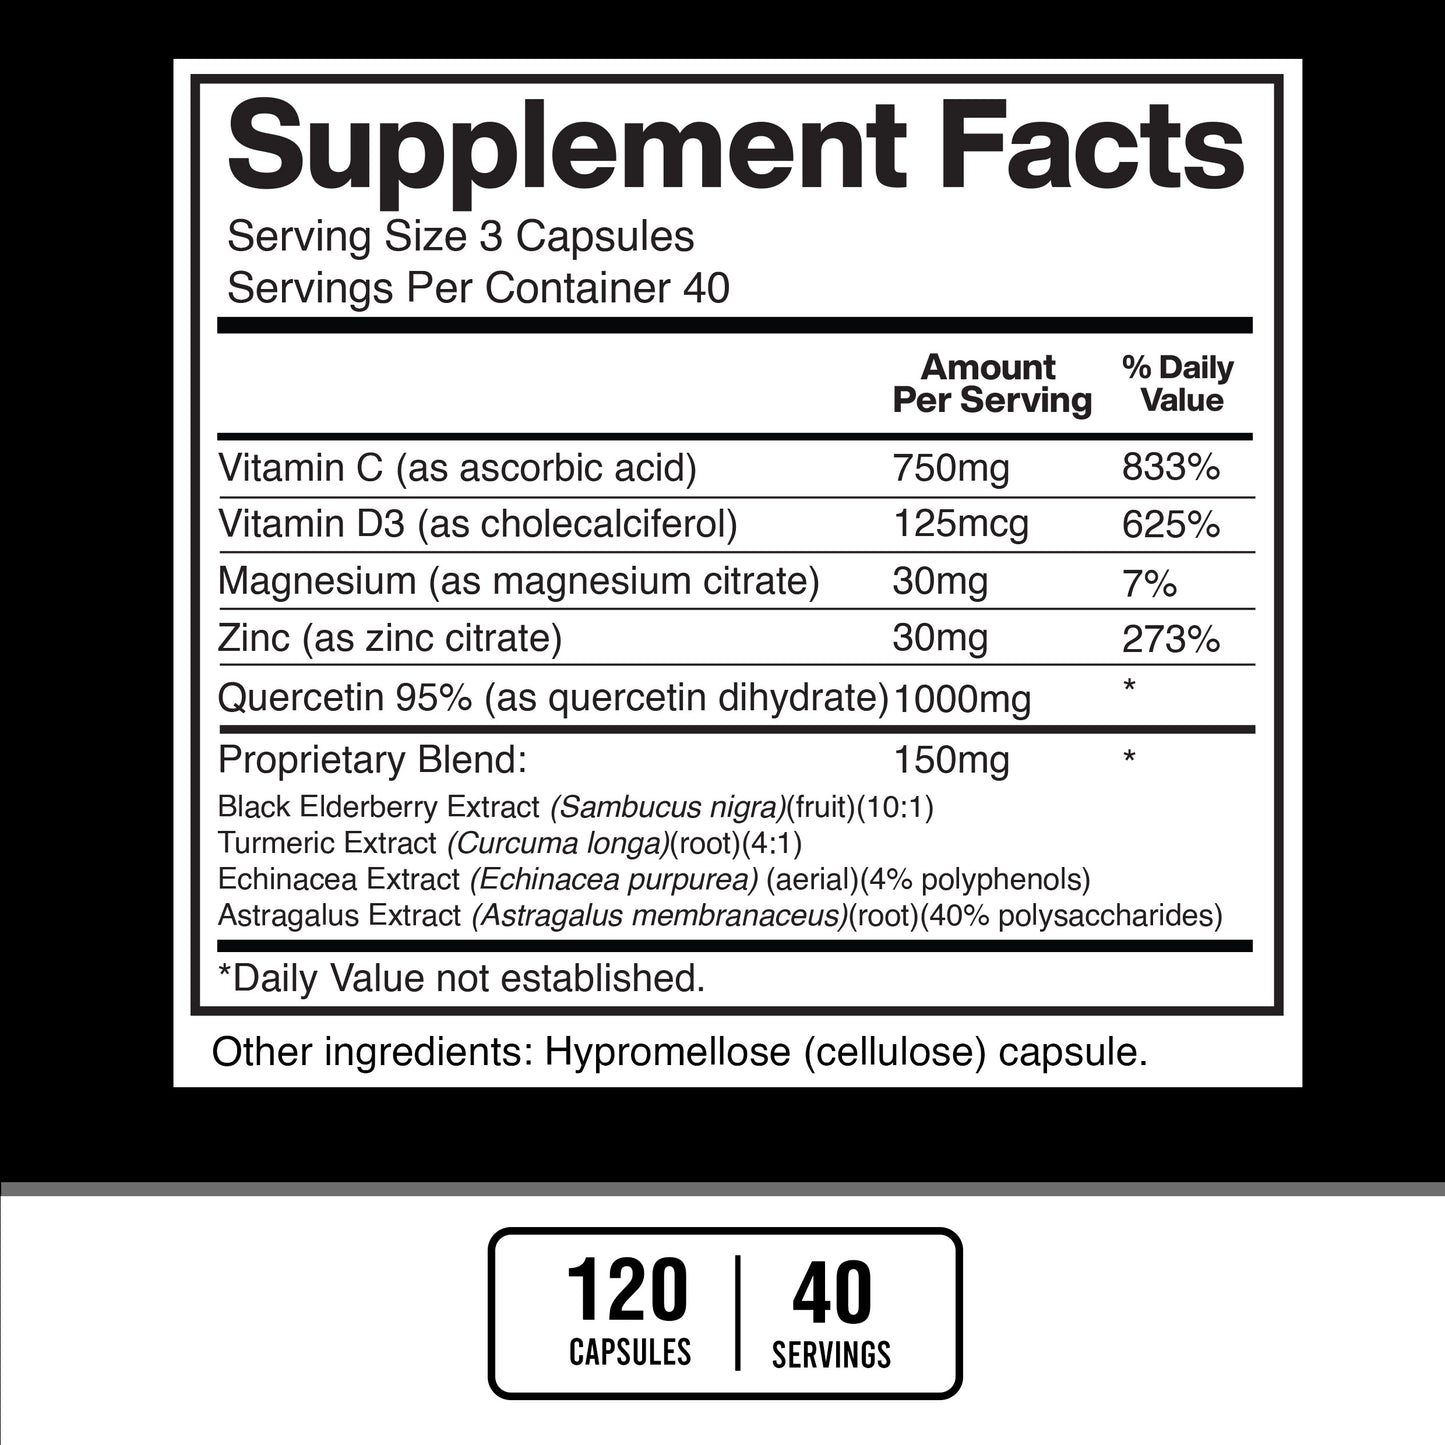 Quercetin 1000mg Per Serving with Zinc, Vitamin C, Vitamin D3, Magnesium, Elderberry, Echinacea, Turmeric, Astragalus - American Standard Supplements